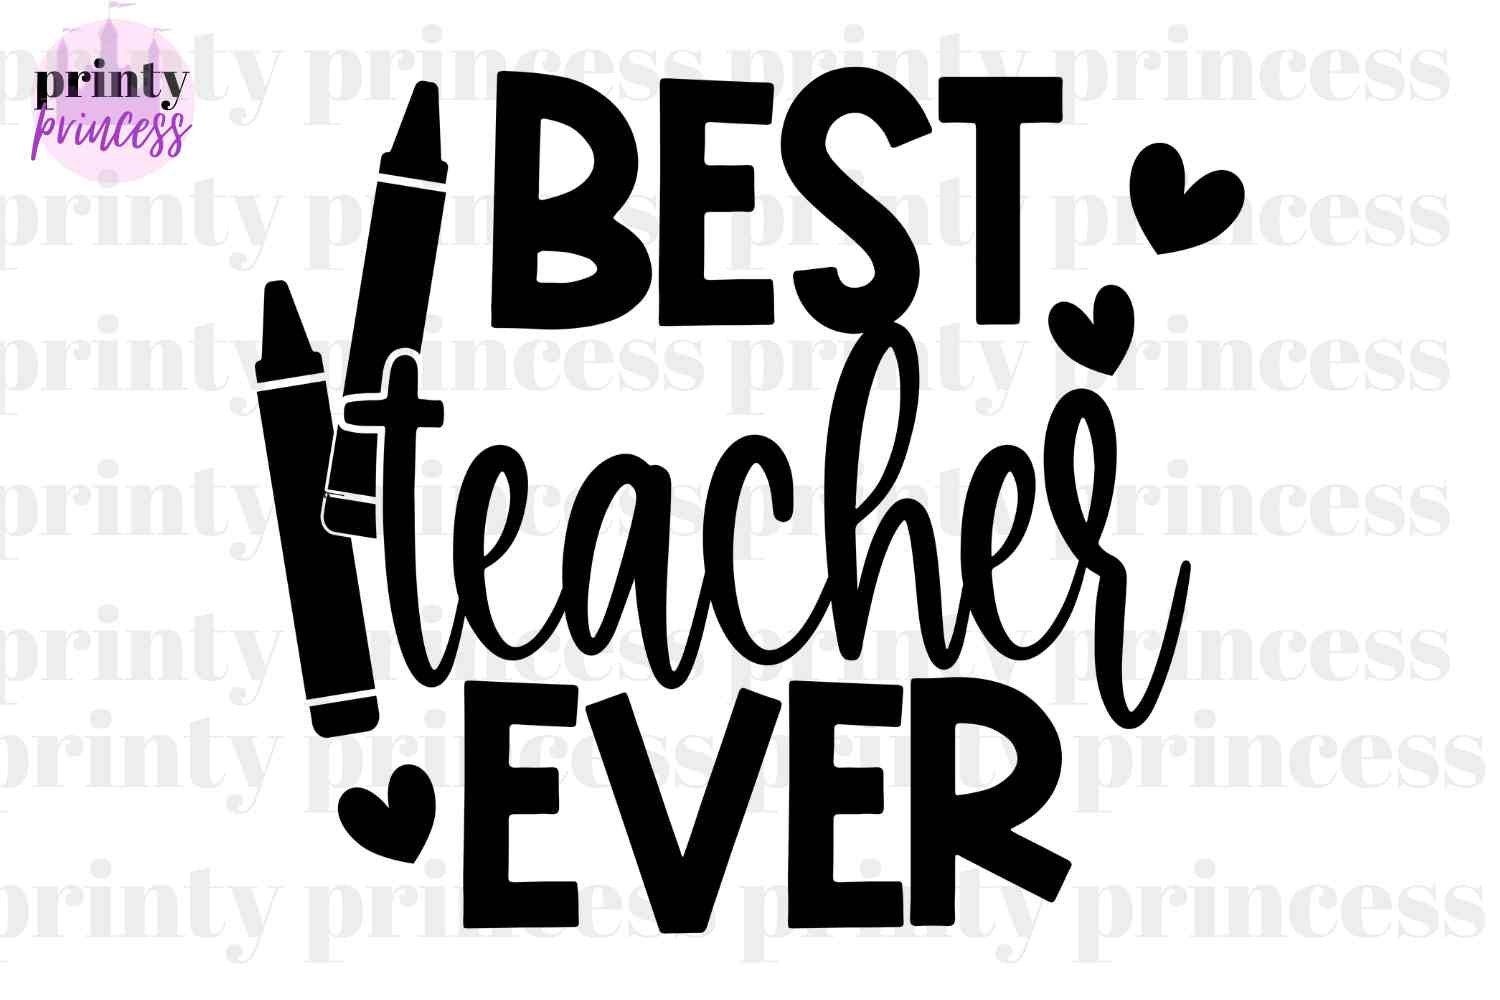 Best Teacher Ever Svg, Teacher Svg, Teach Shirt Png, Eps, Teacher Appreciation Svg, Teach Svg, Teacher Quote Svg, Teaching Cutting File